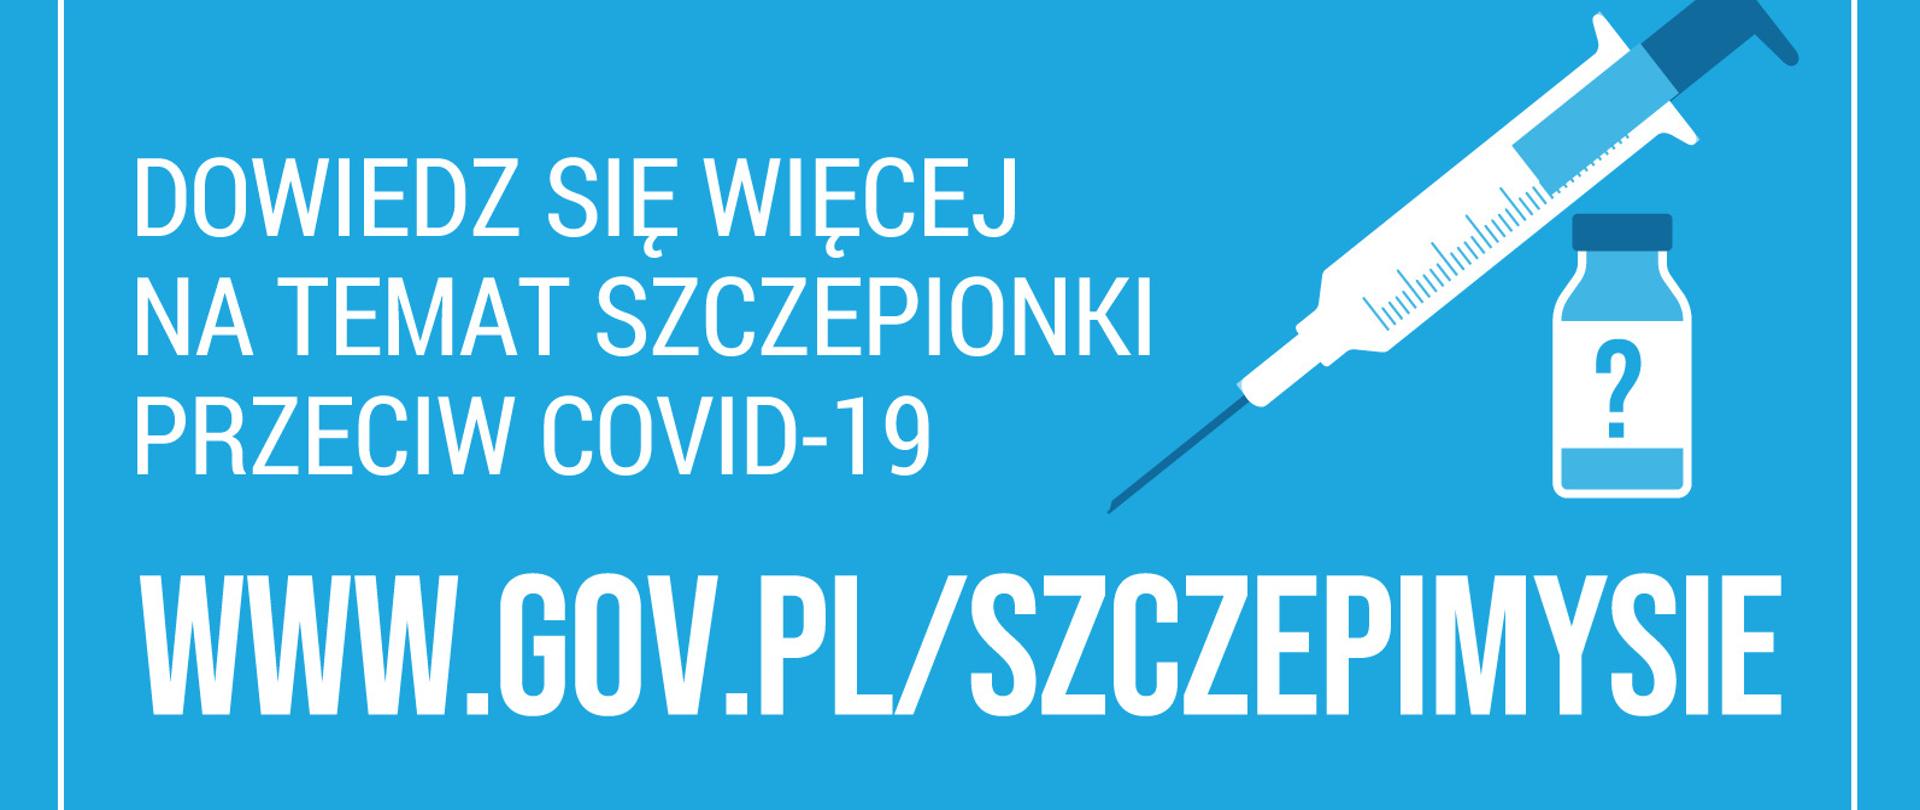 Zdjęcie przedstawia plakat, na którym widnieje adres strony internetowej dot. szczepień